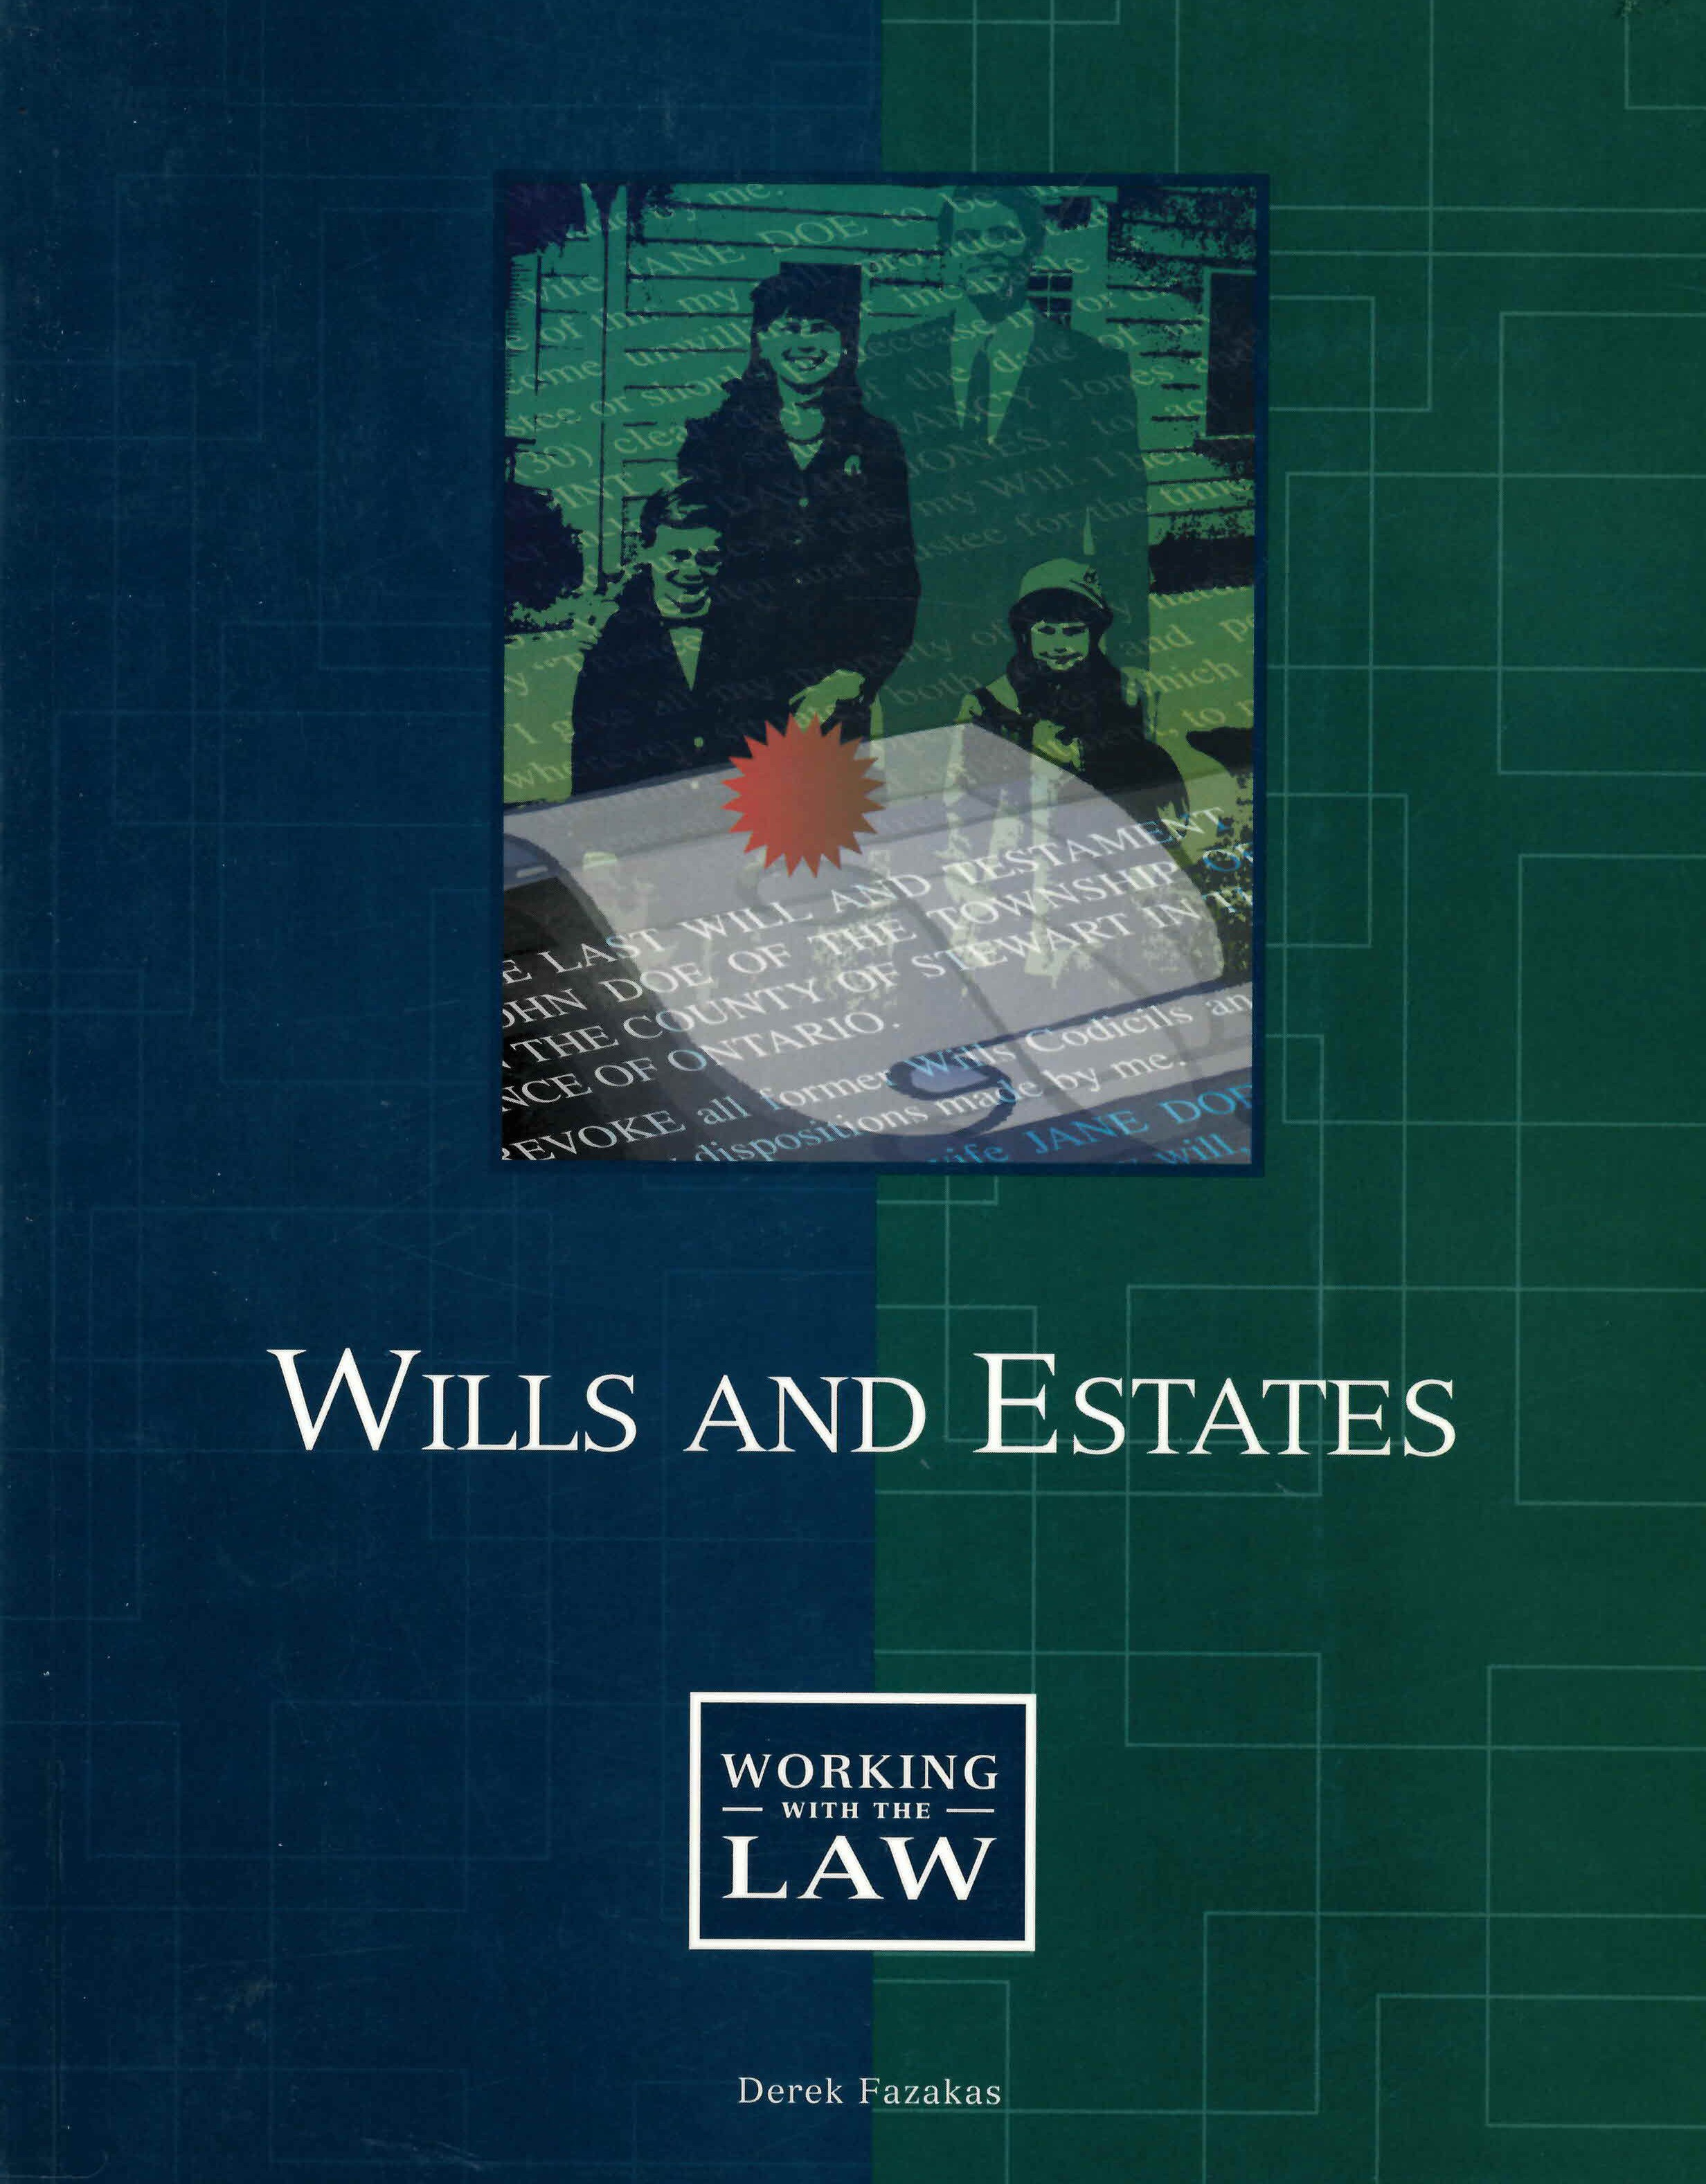 Wills and estates